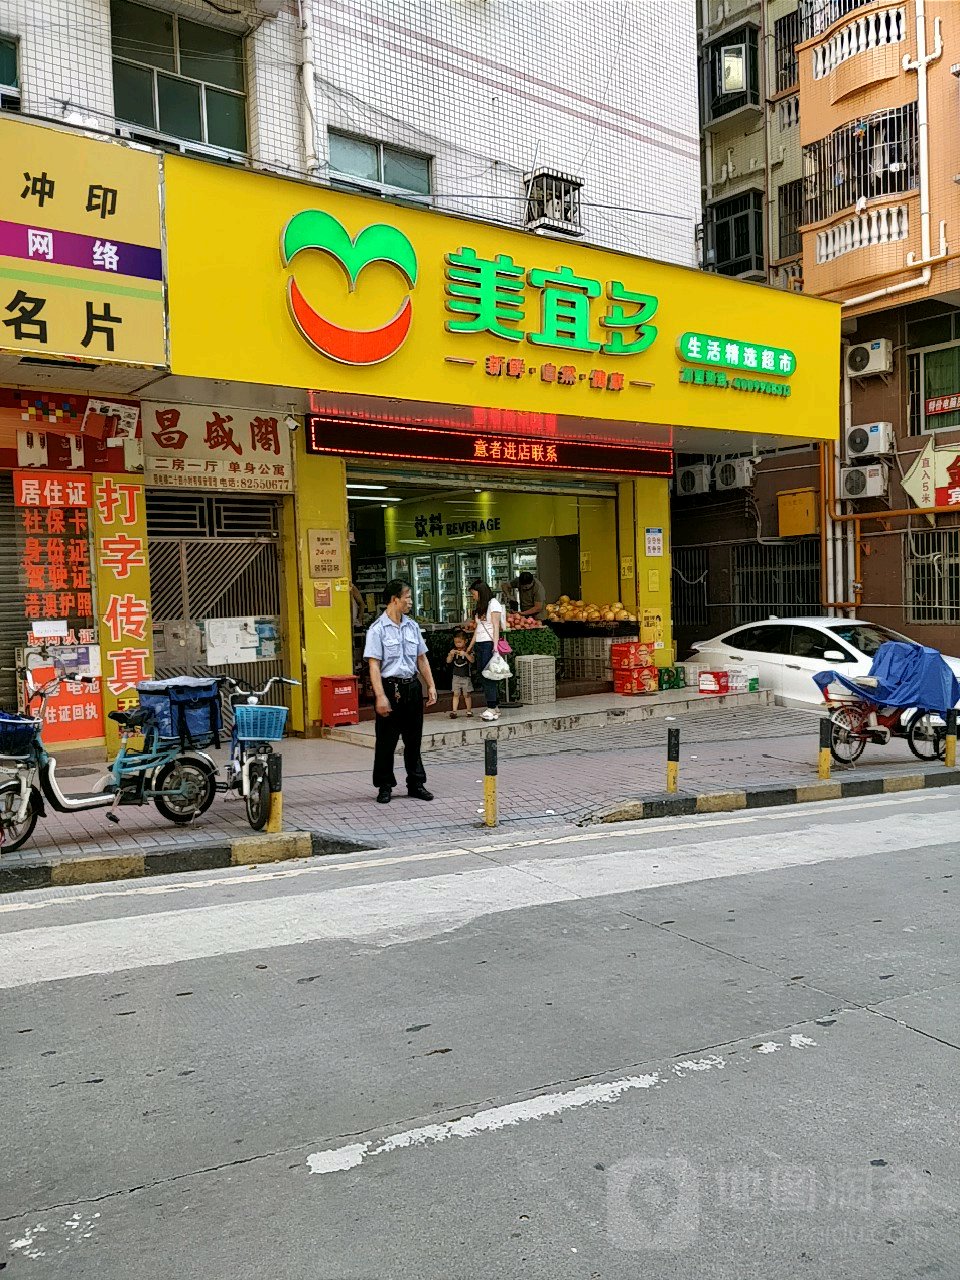 男“深圳上沙还有快餐吗”街拍图文 - 大全